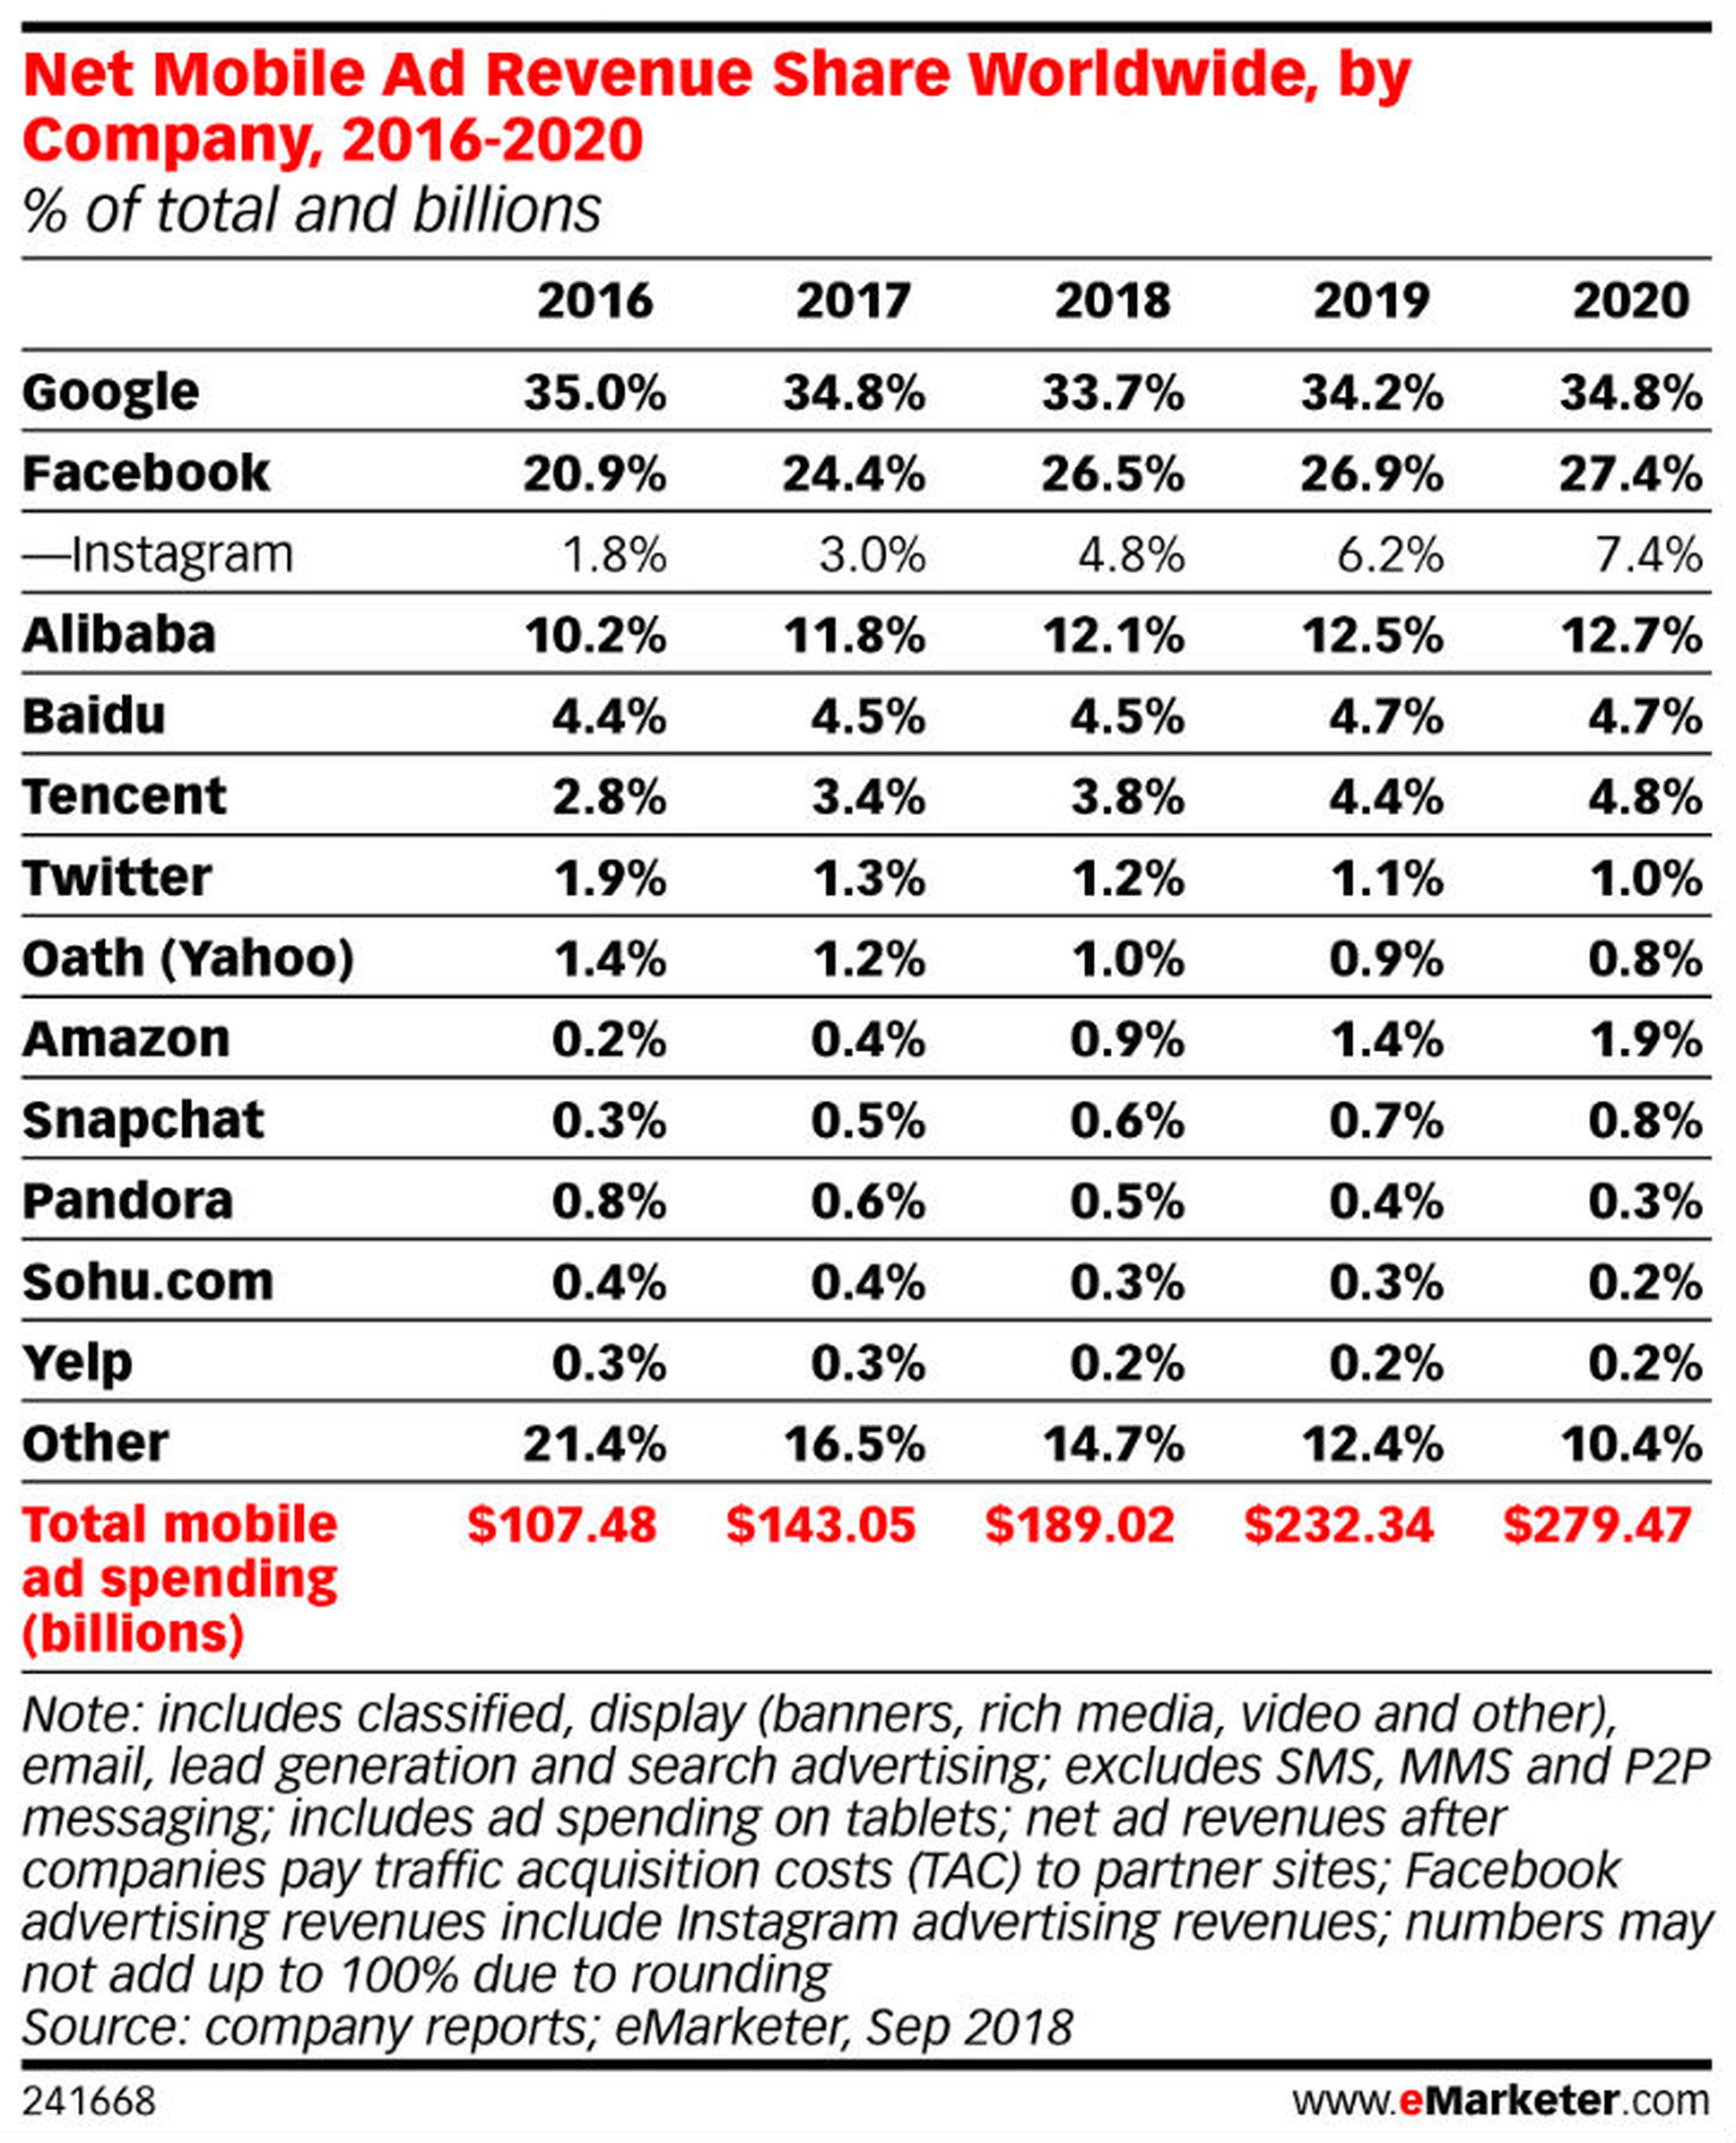 Evolución del reparto de la cuota del mercado global de publicidad digital entre 2016 y 2020